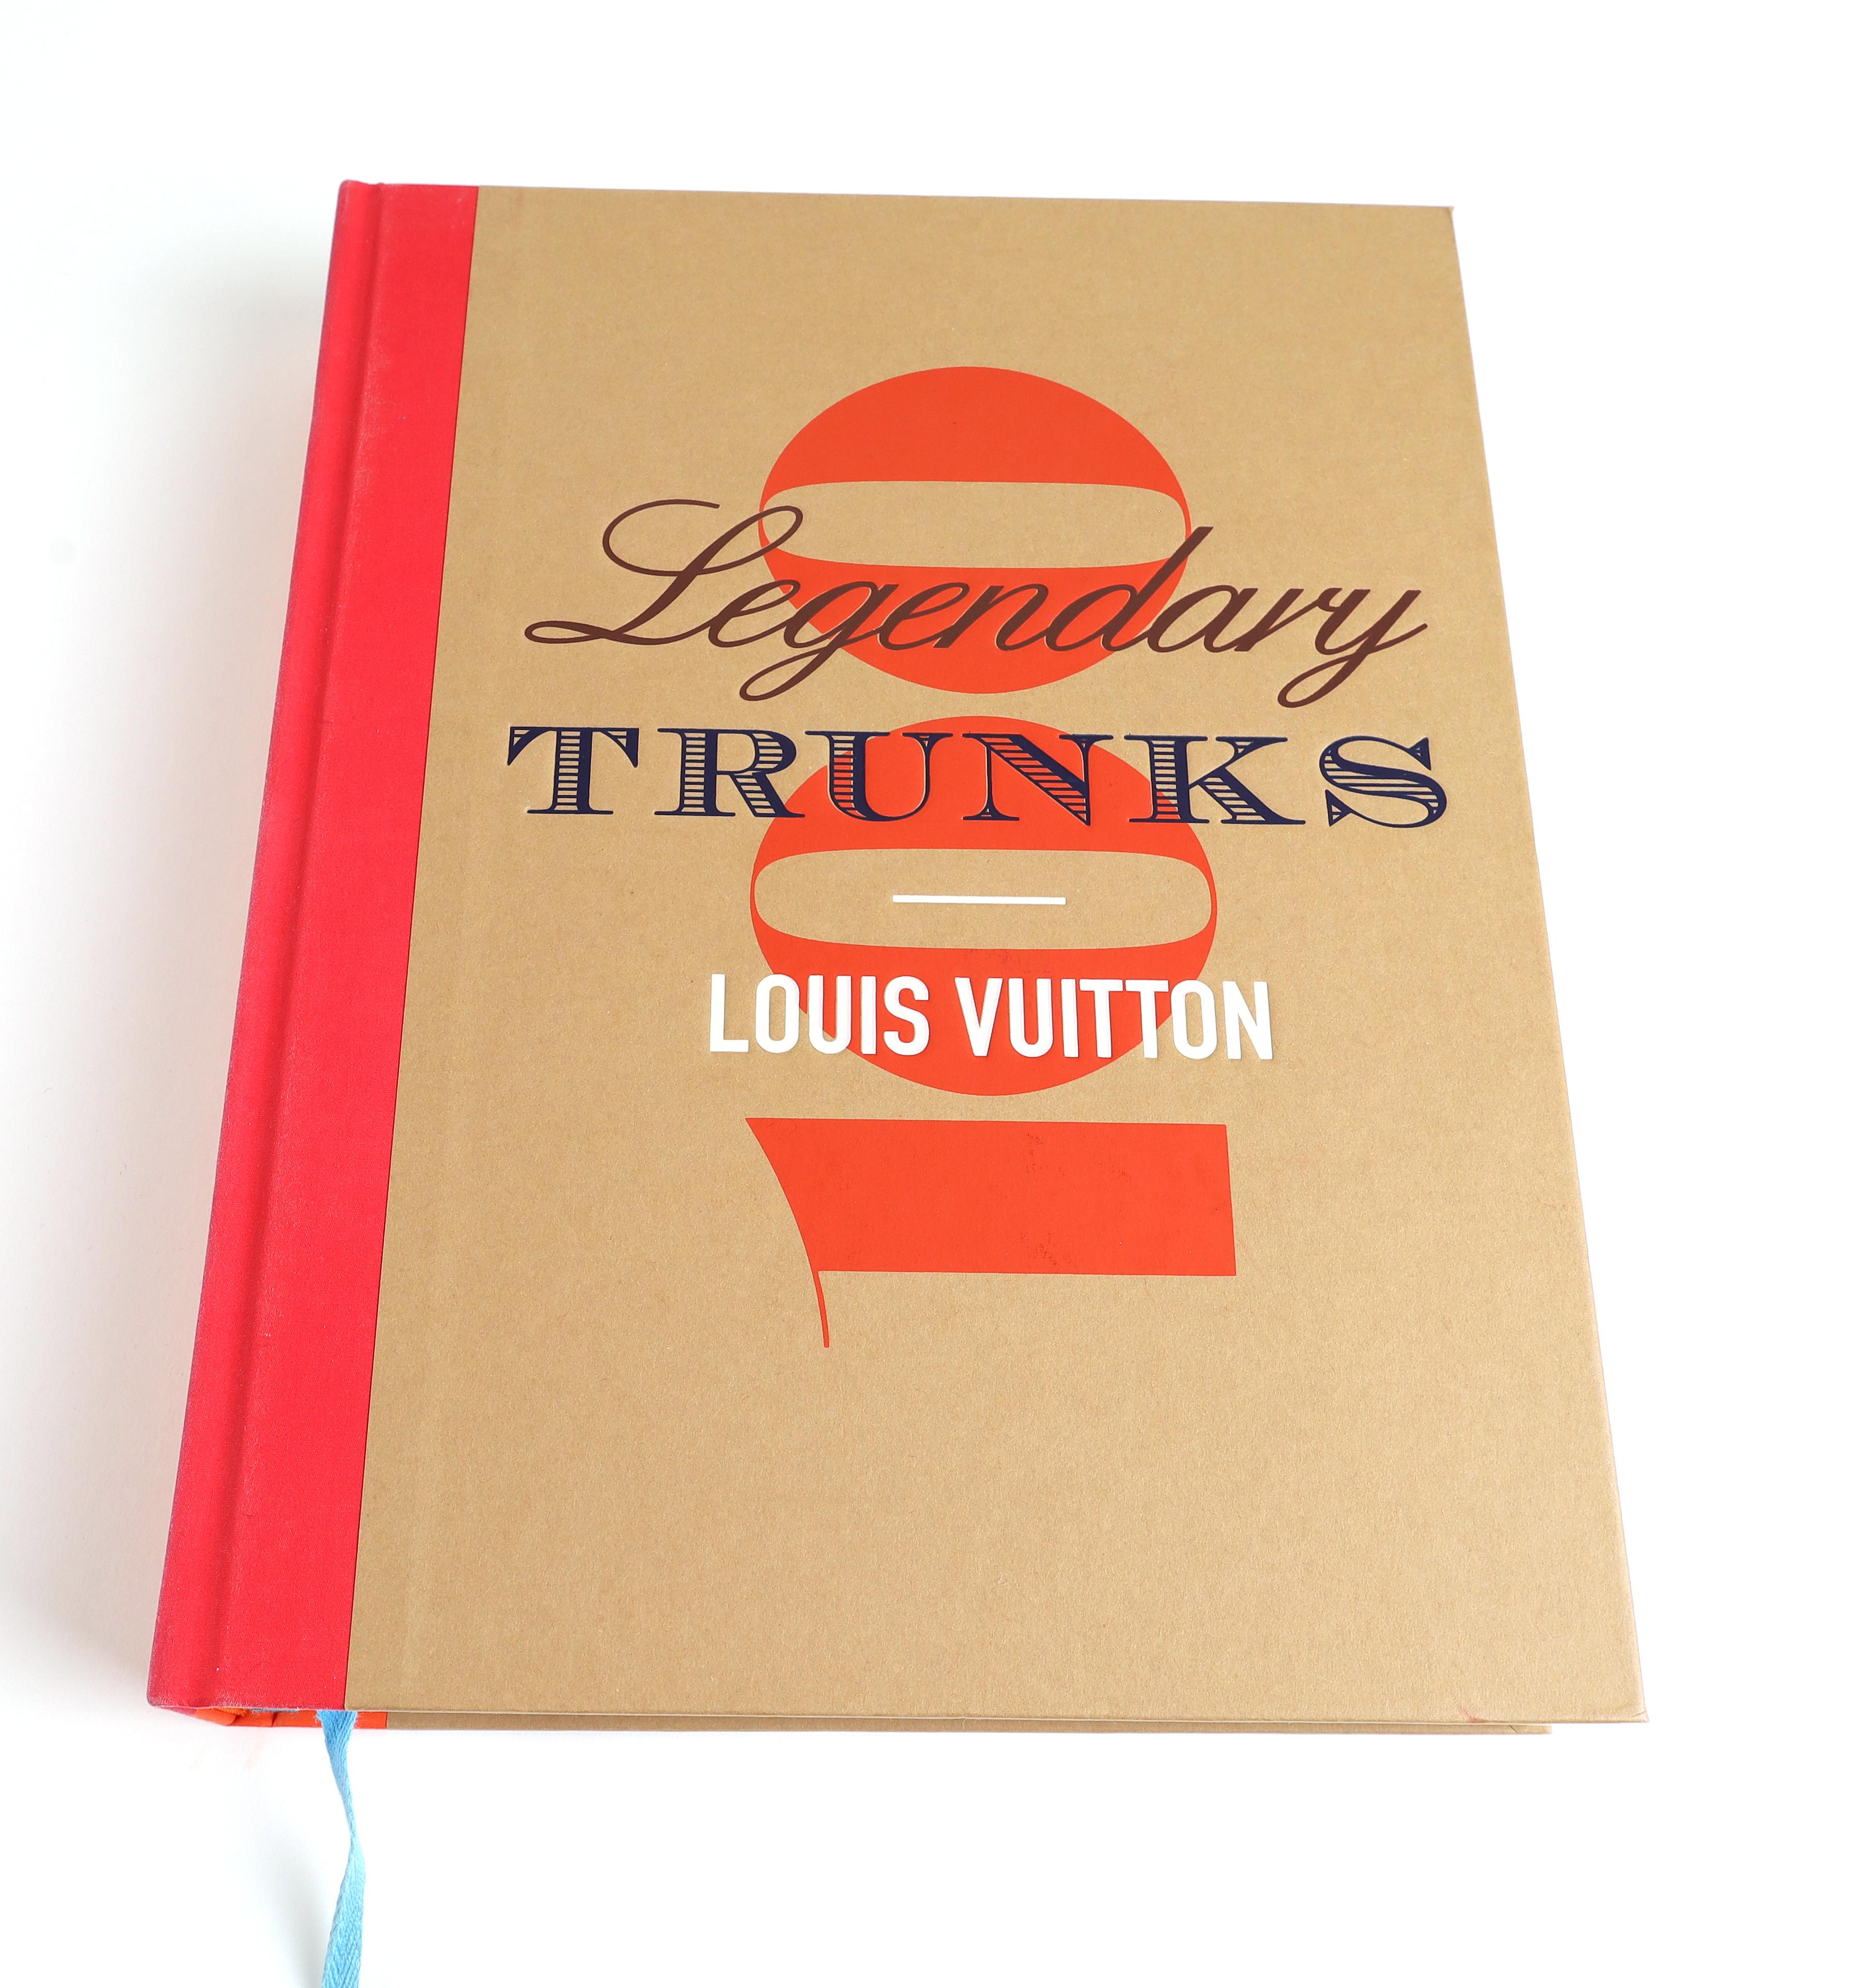 Louis Vuitton - Legendary Trunks